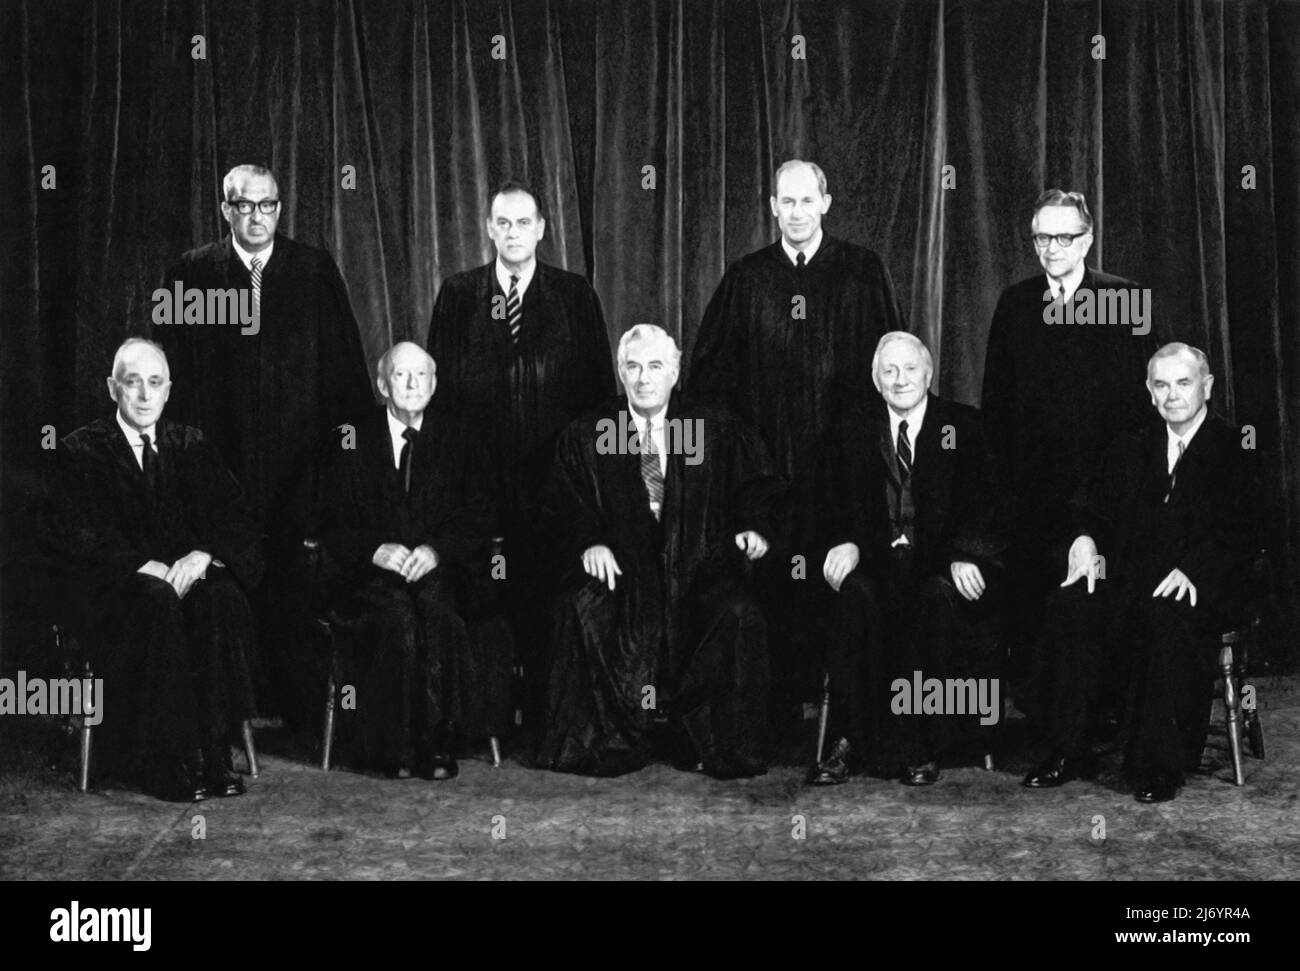 Retrato de grupo oficial de la Corte Suprema de los Estados Unidos el 23 de enero de 1971. Este tribunal escucharía más tarde el argumento inicial en el caso de aborto Roe vs. Wade el 13 de diciembre de 1971. El caso fue rediscutido el 11 de octubre de 1972 con los jueces retirados Black y Harlan siendo reemplazados por los jueces Powell y Rehnquist. Row vs. Wade fue decidido el 22 de enero de 1973. Foto de stock